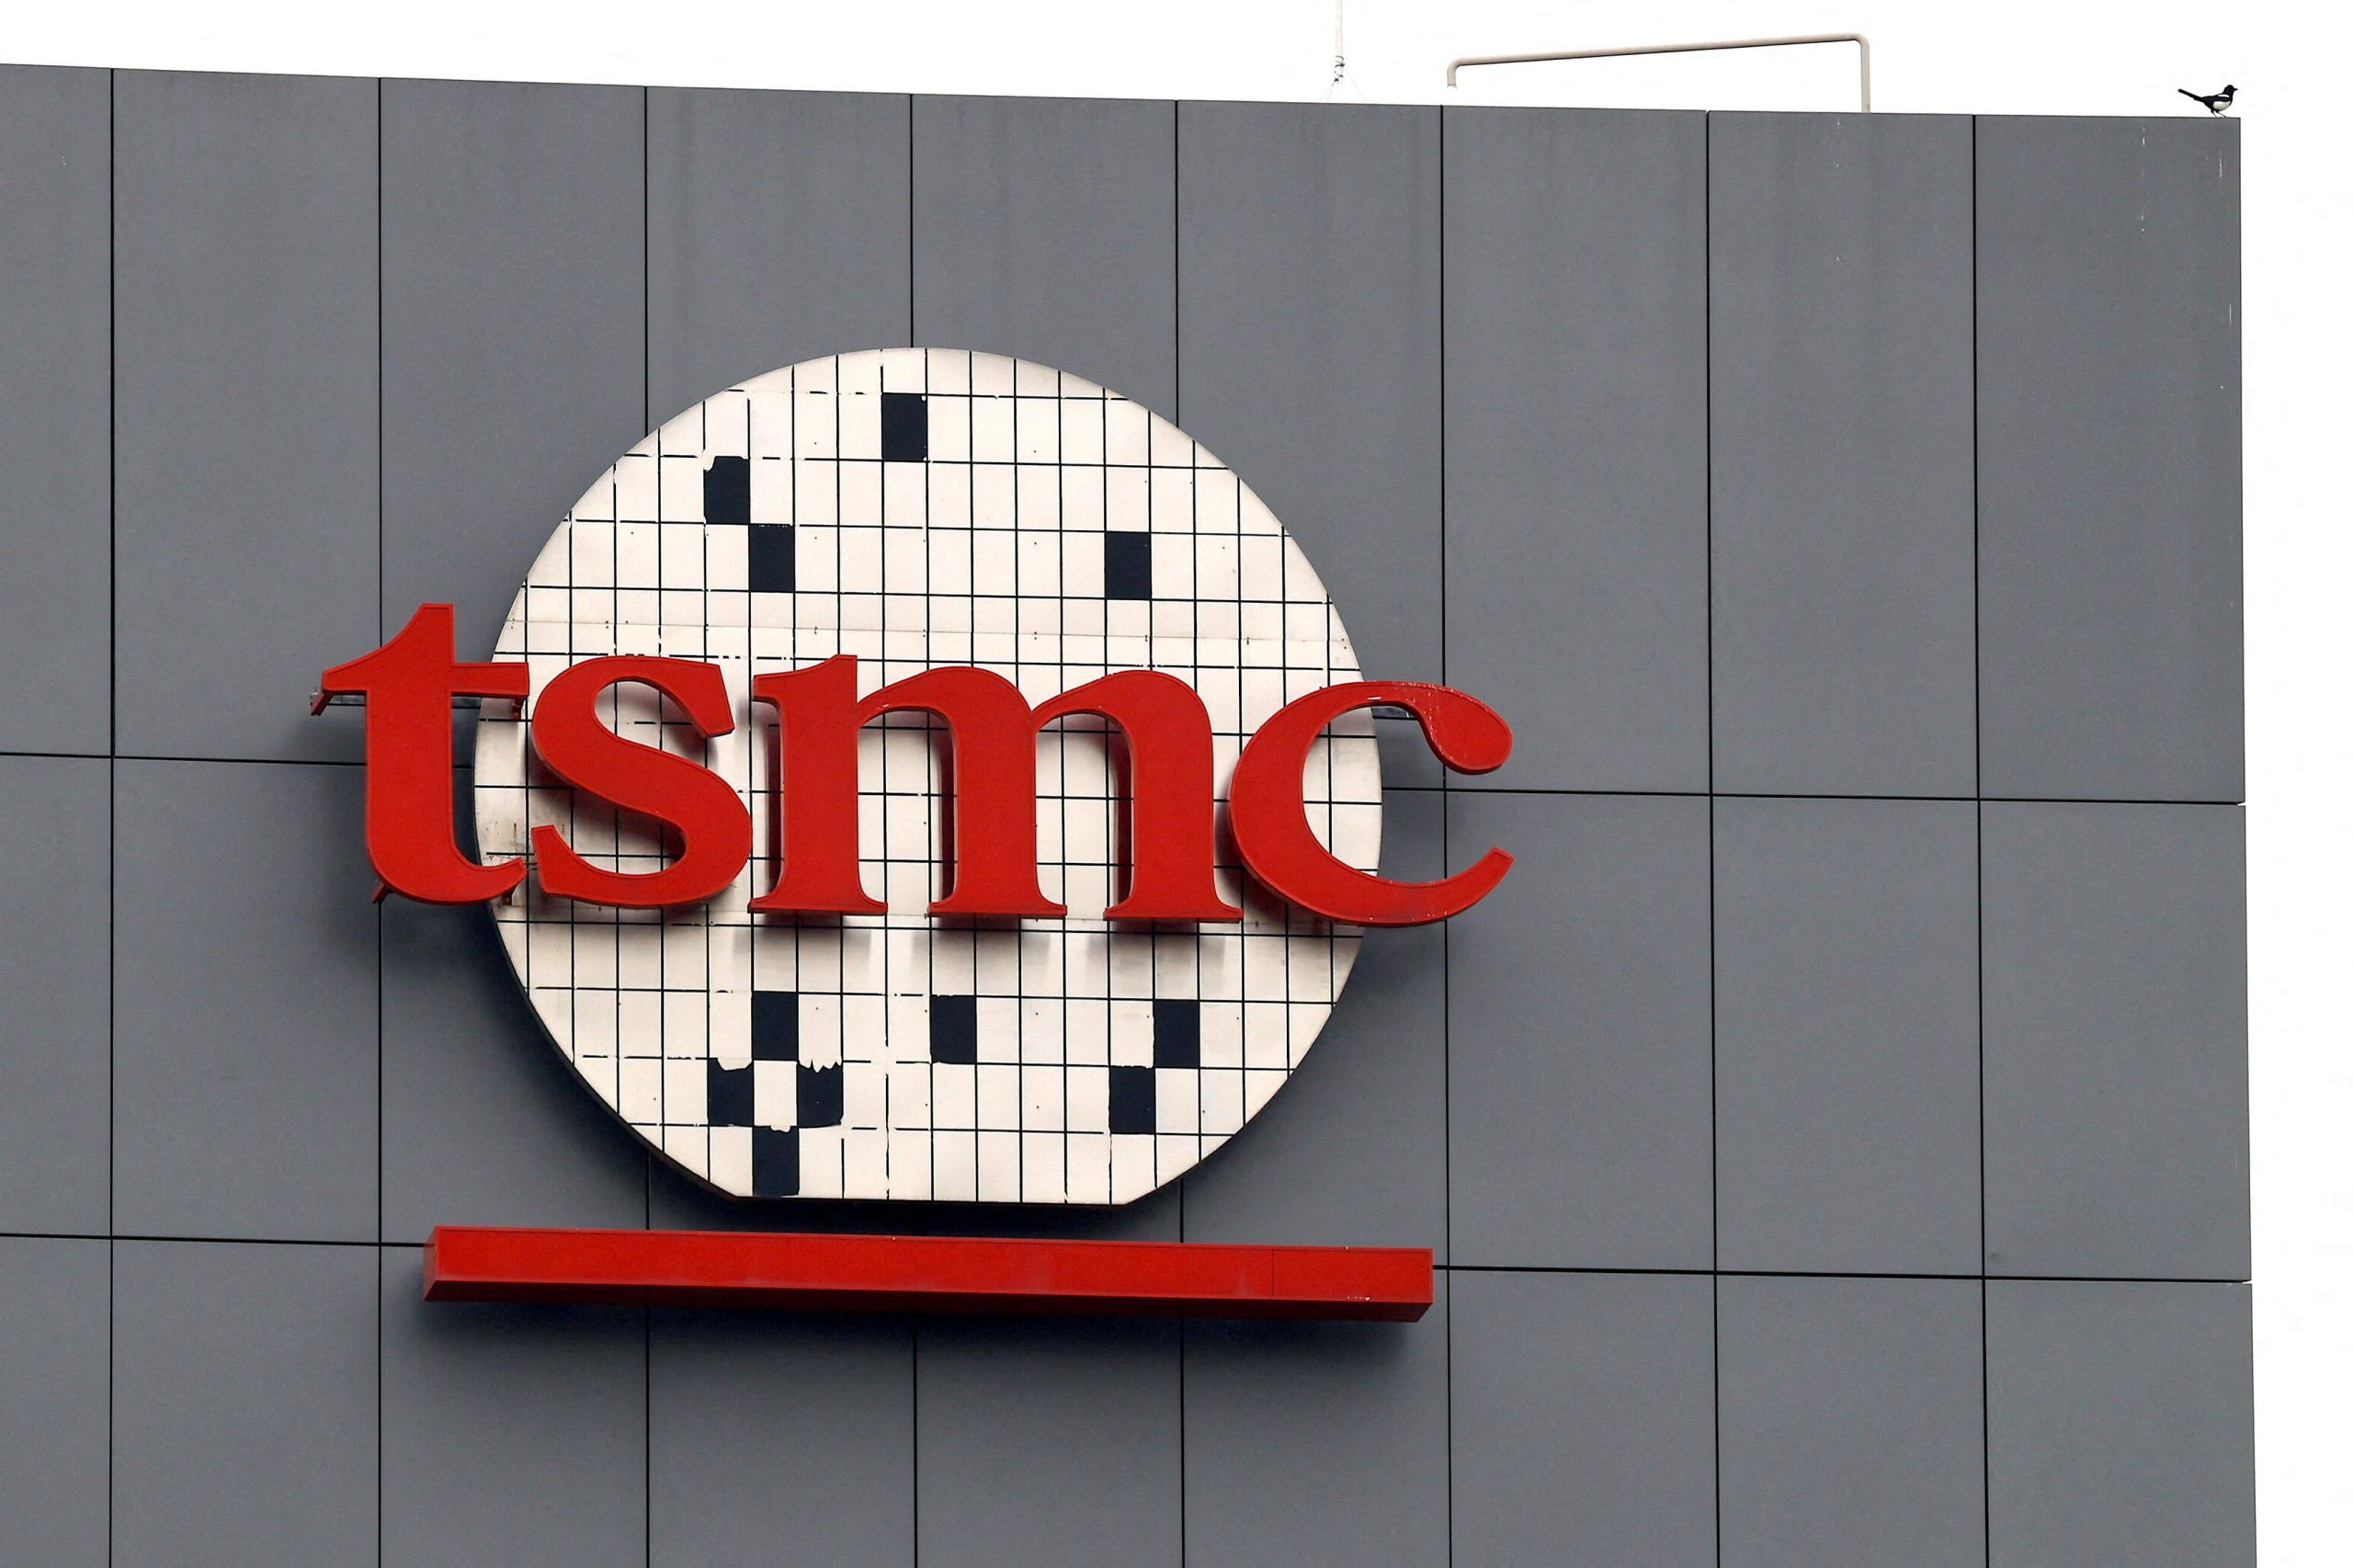 Ημιαγωγοί: Νέα επένδυση της TSMC σε εργοστάσιο στην Ταϊβάν